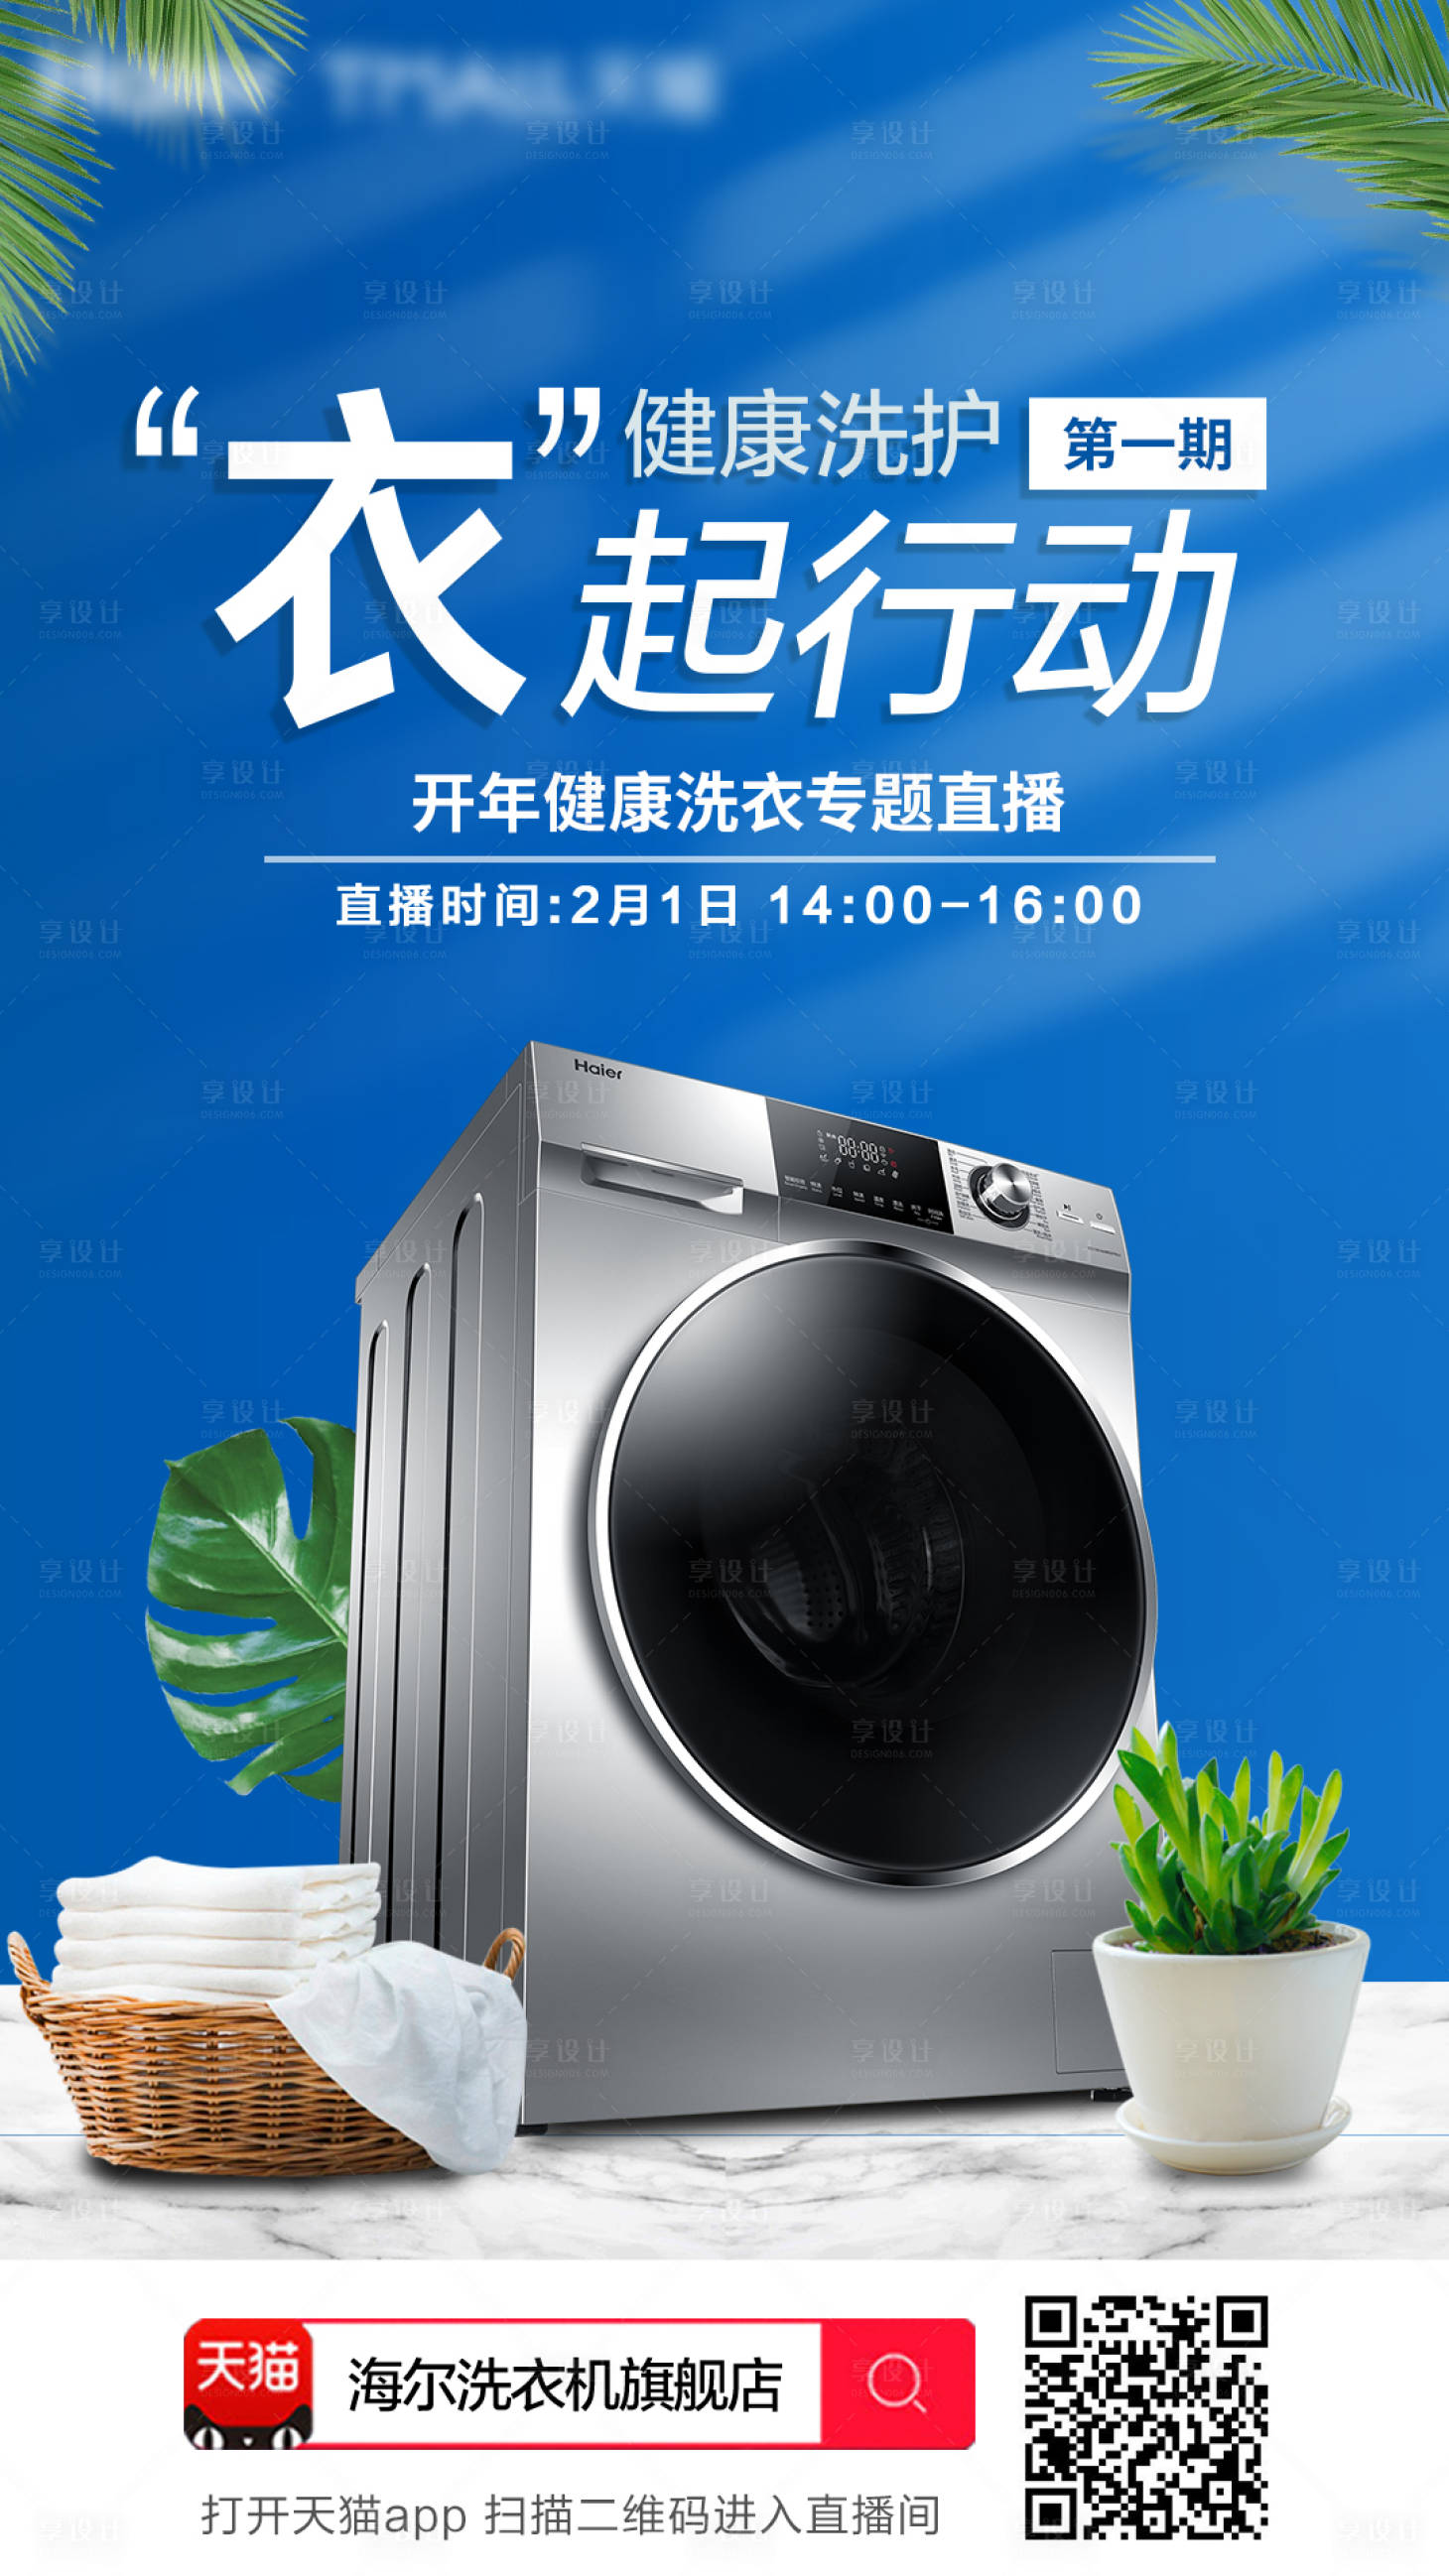 大品牌家电洗衣机直播预热海报蓝色色psd广告设计作品素材免费下载-享